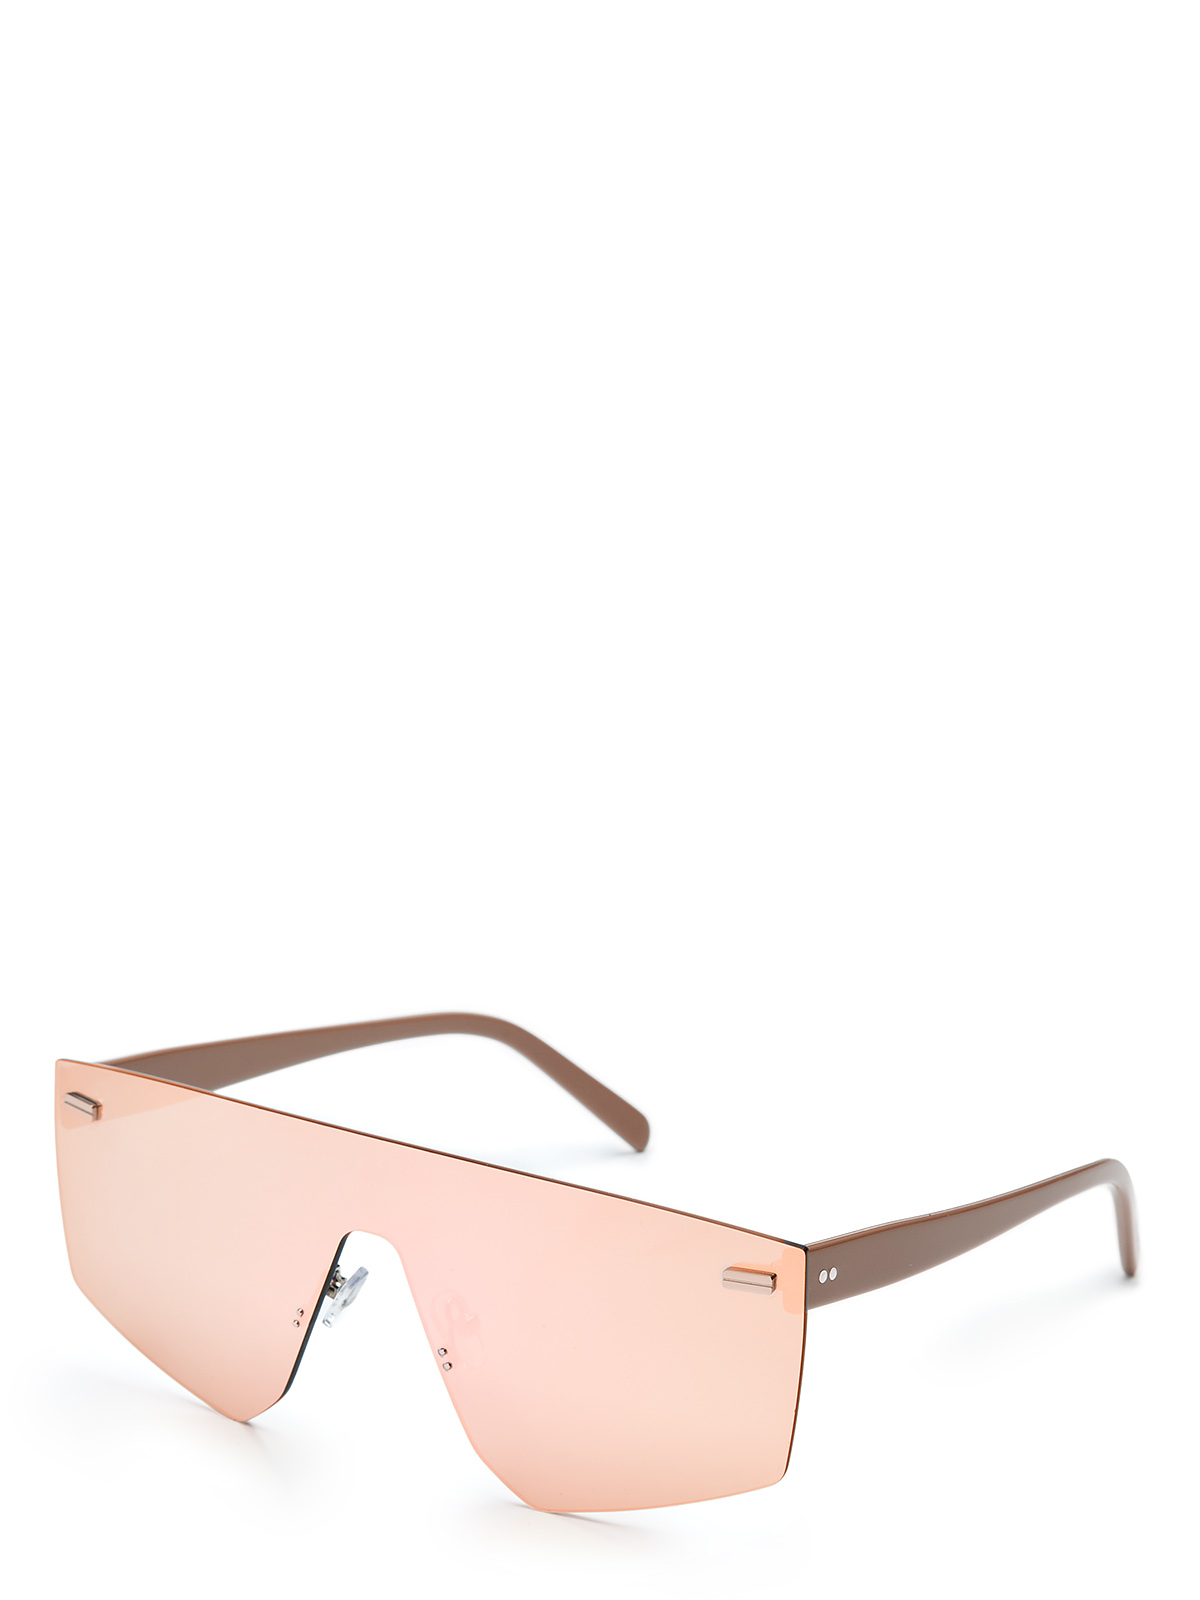 Солнцезащитные очки женские Eleganzza ZZ-23114 коричневые